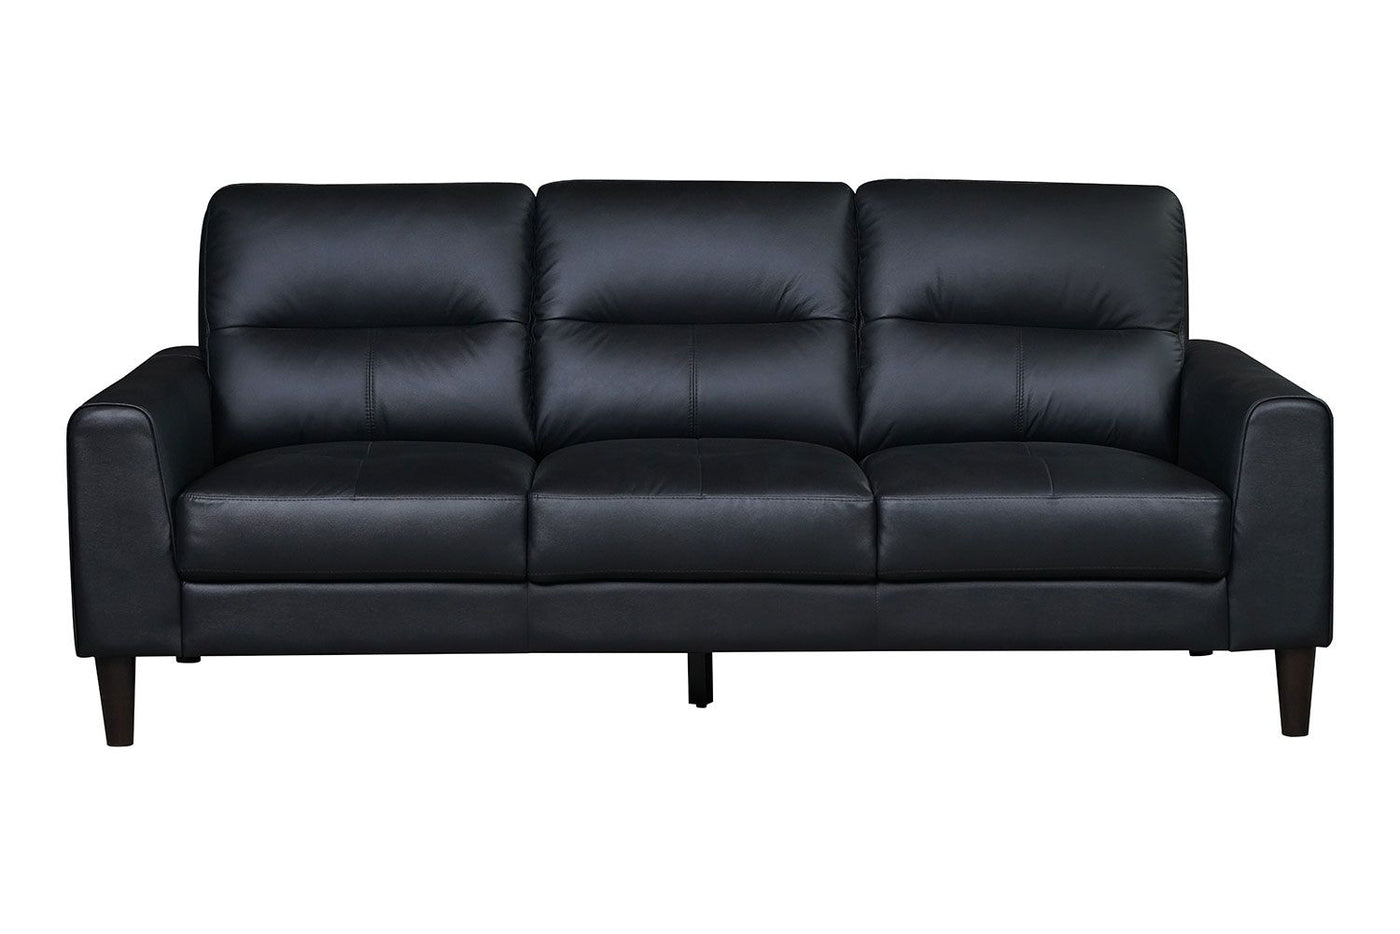 Verissimo Leather Sofa - Black